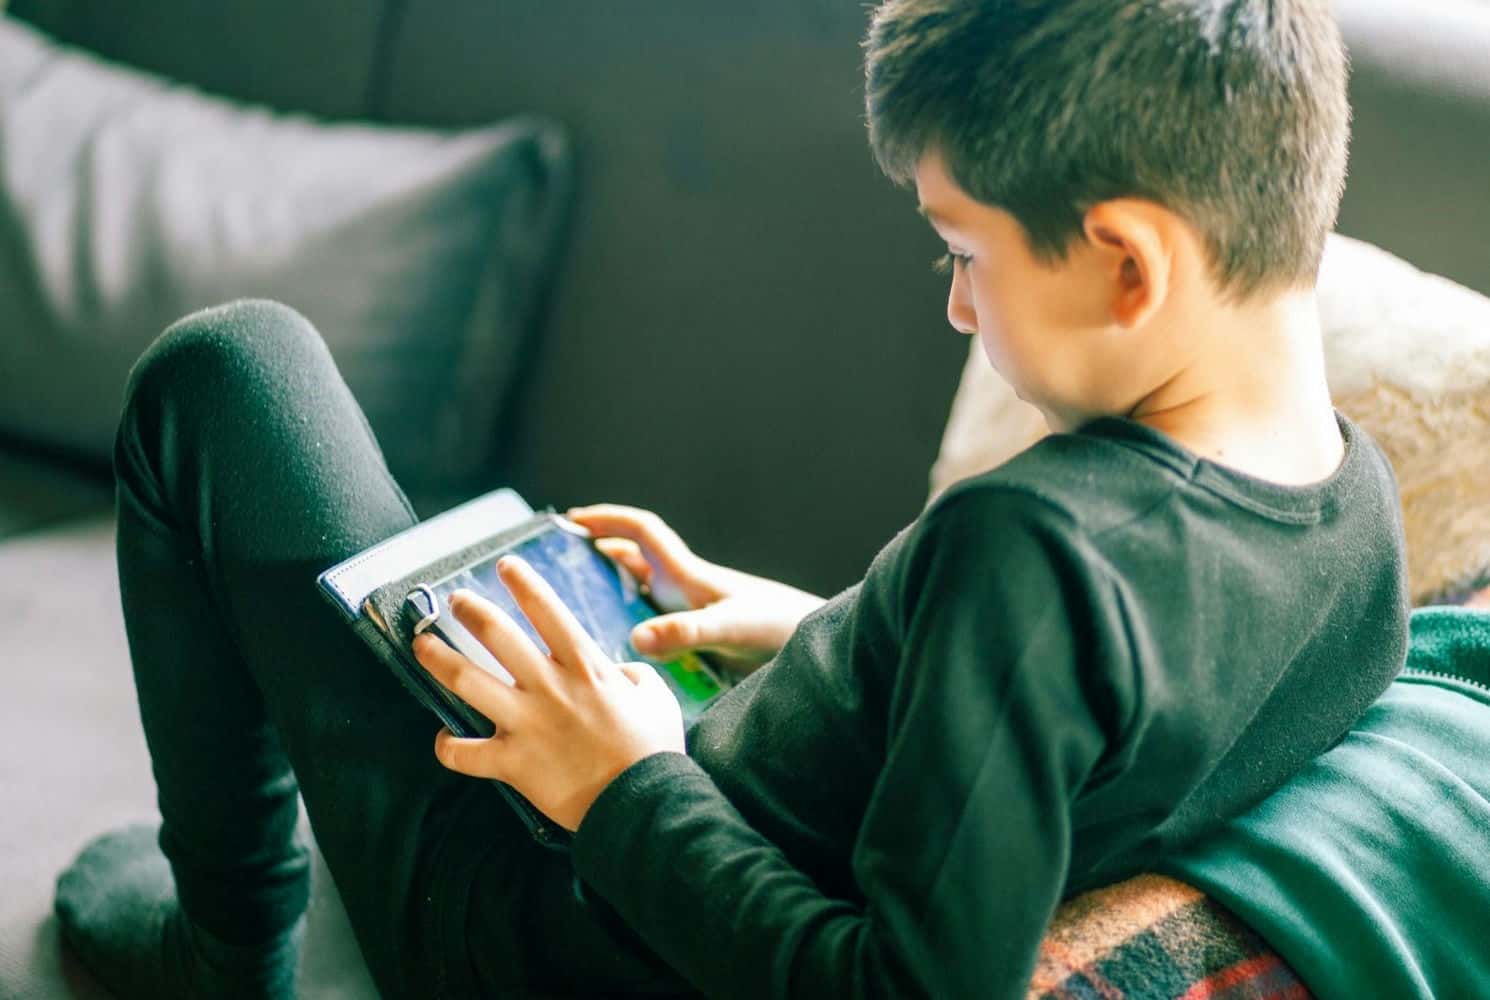 تأثیر والدین بر رفتار کودکان در عصر اینترنت چگونه است؟